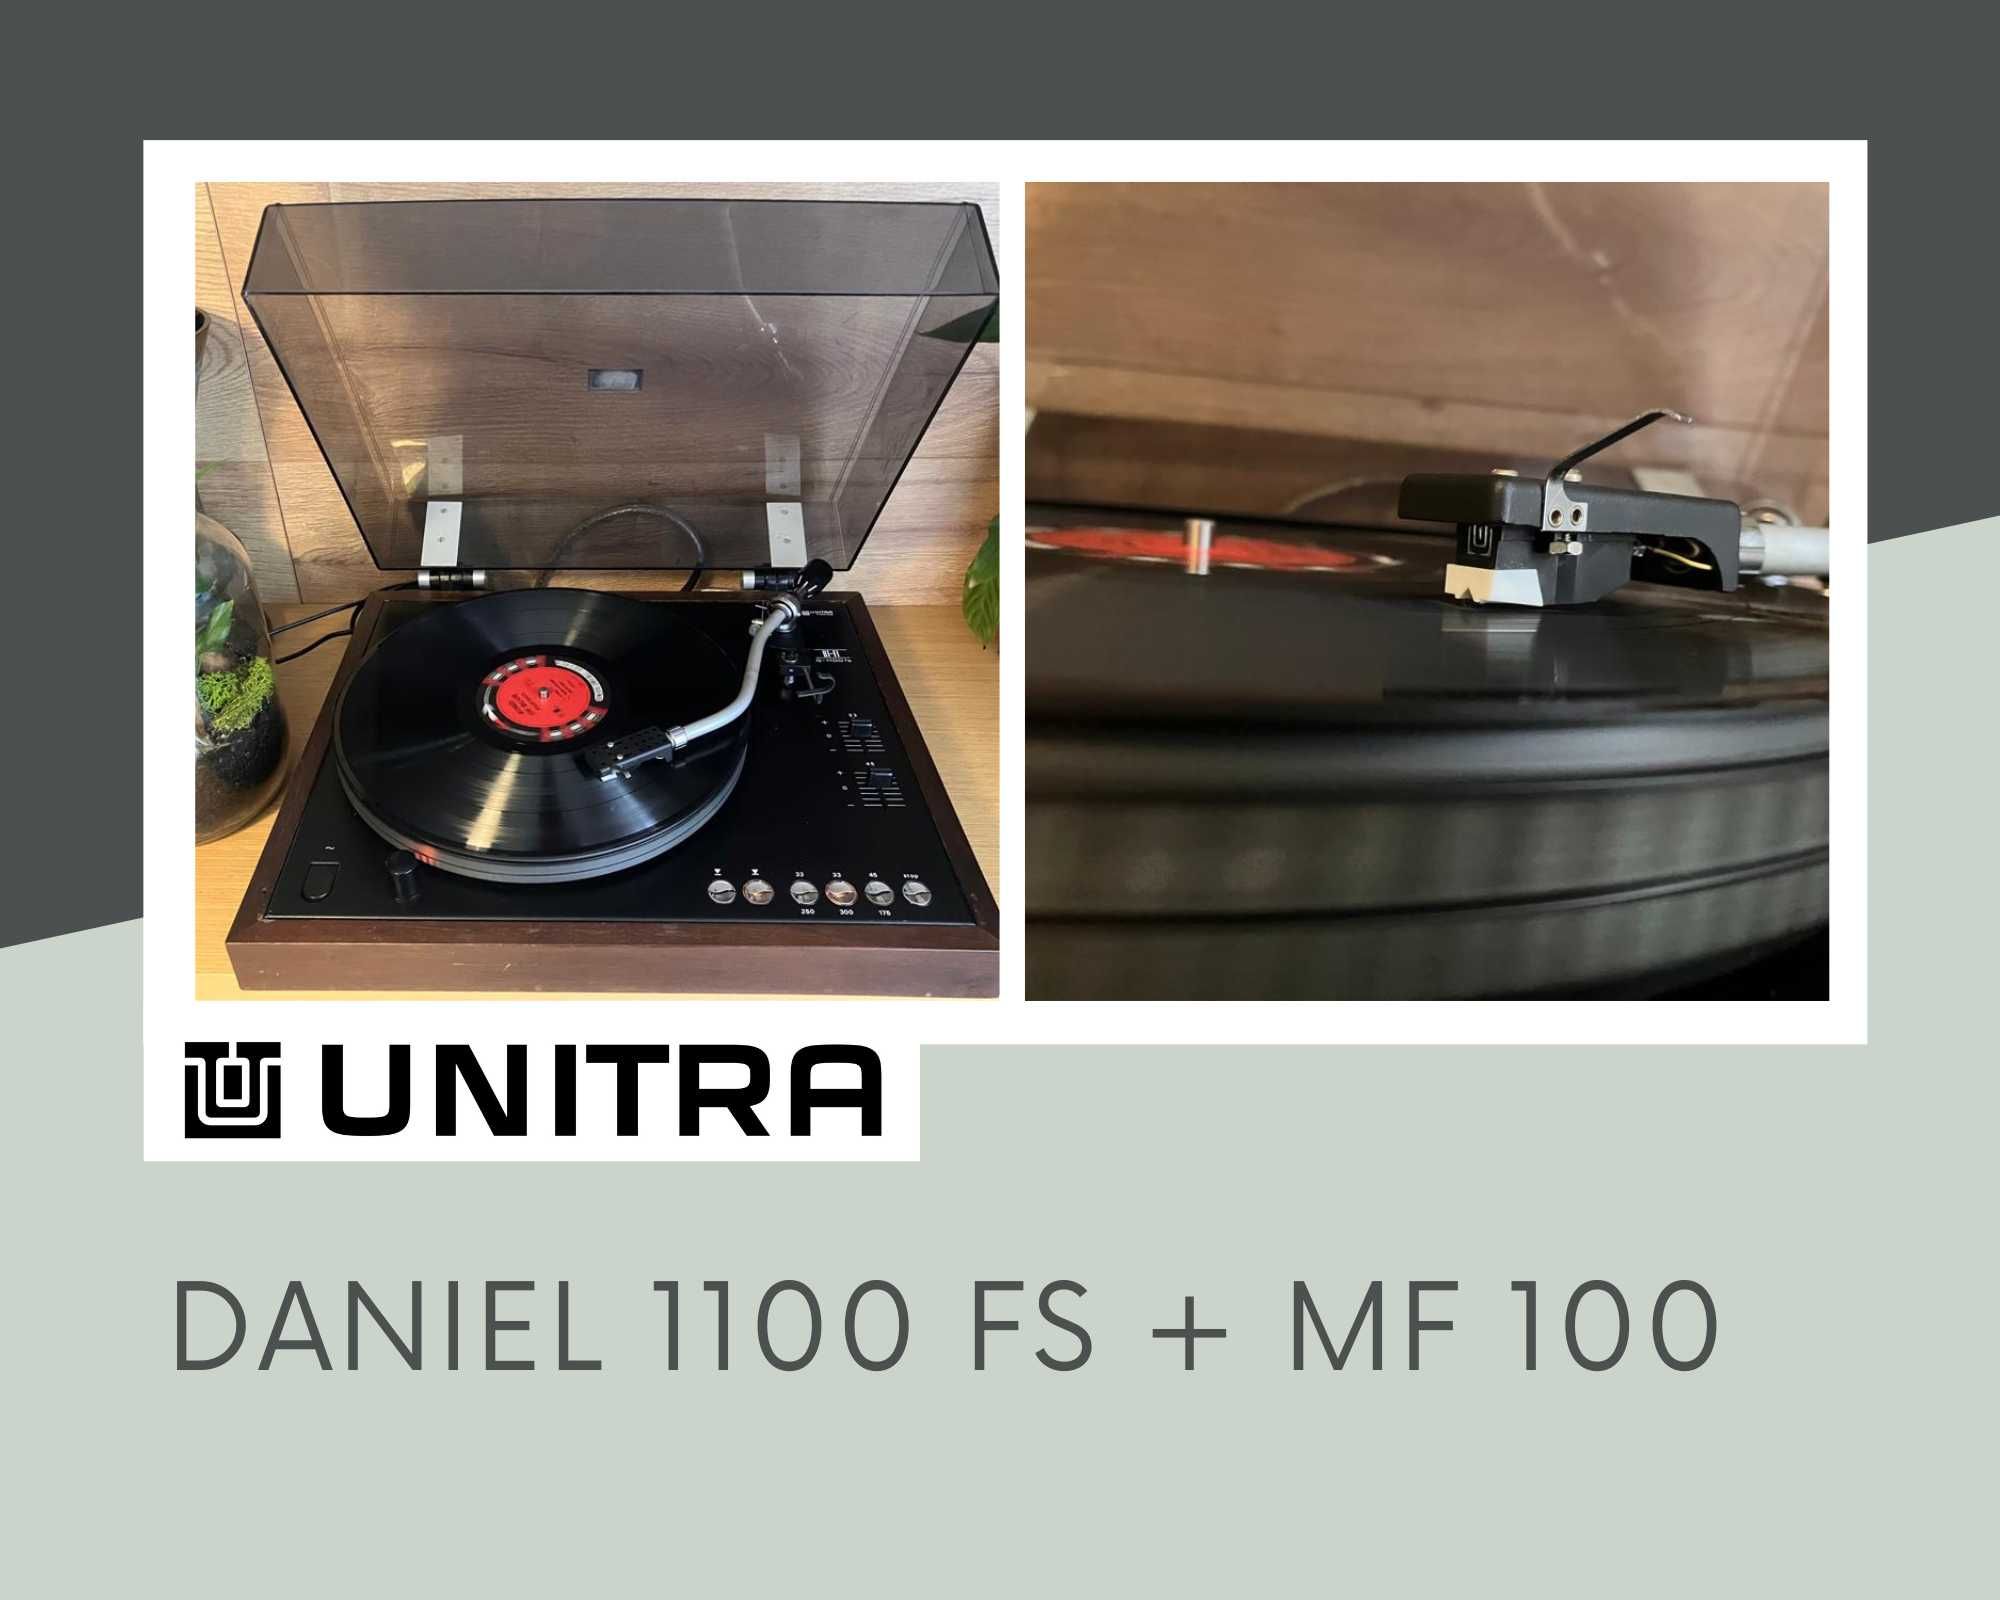 Gramofon Daniel 1100FS r.1977 sprawny po przeglądzie